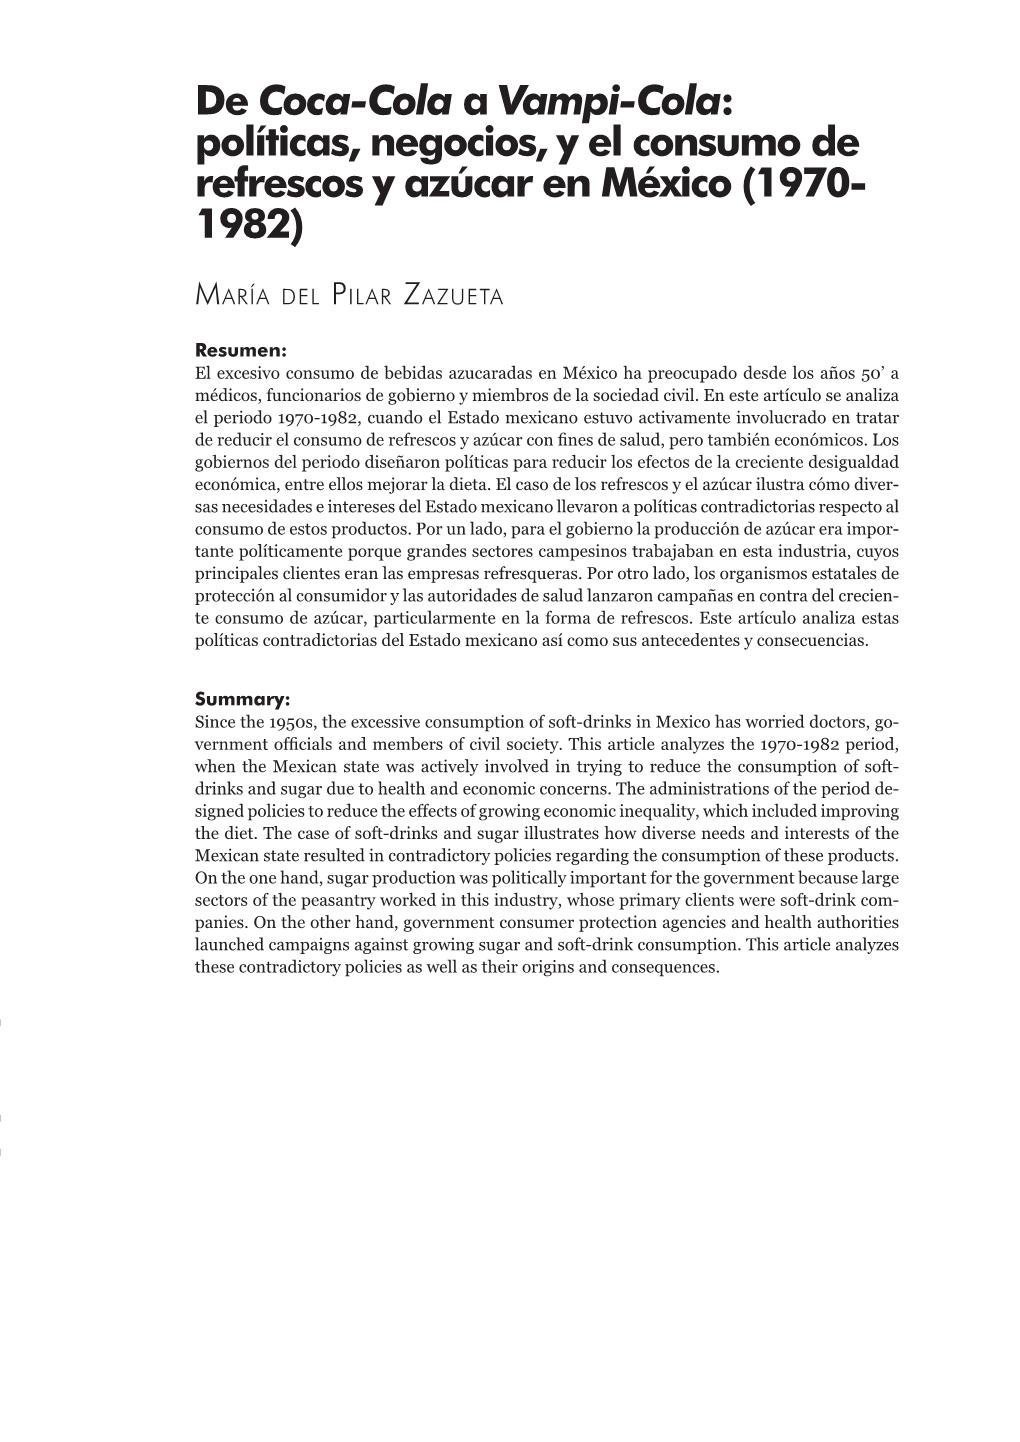 De Coca-Cola a Vampi-Cola: Políticas, Negocios, Y El Consumo De Refrescos Y Azúcar En México (1970- 1982)